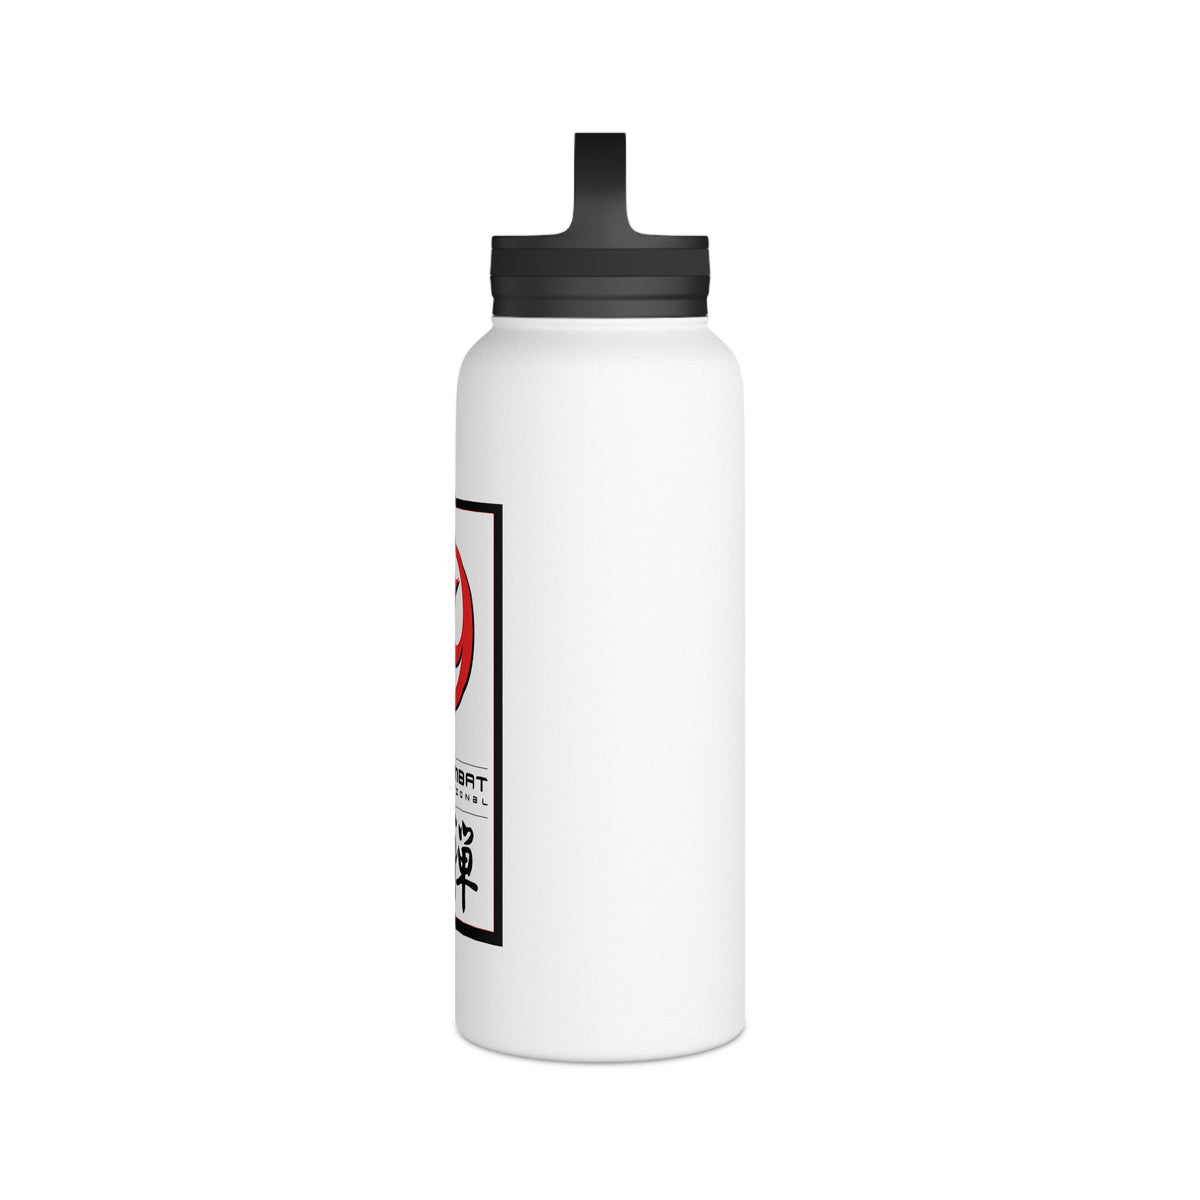 Zen Combat Stainless Steel Water Bottle, Handle Lid